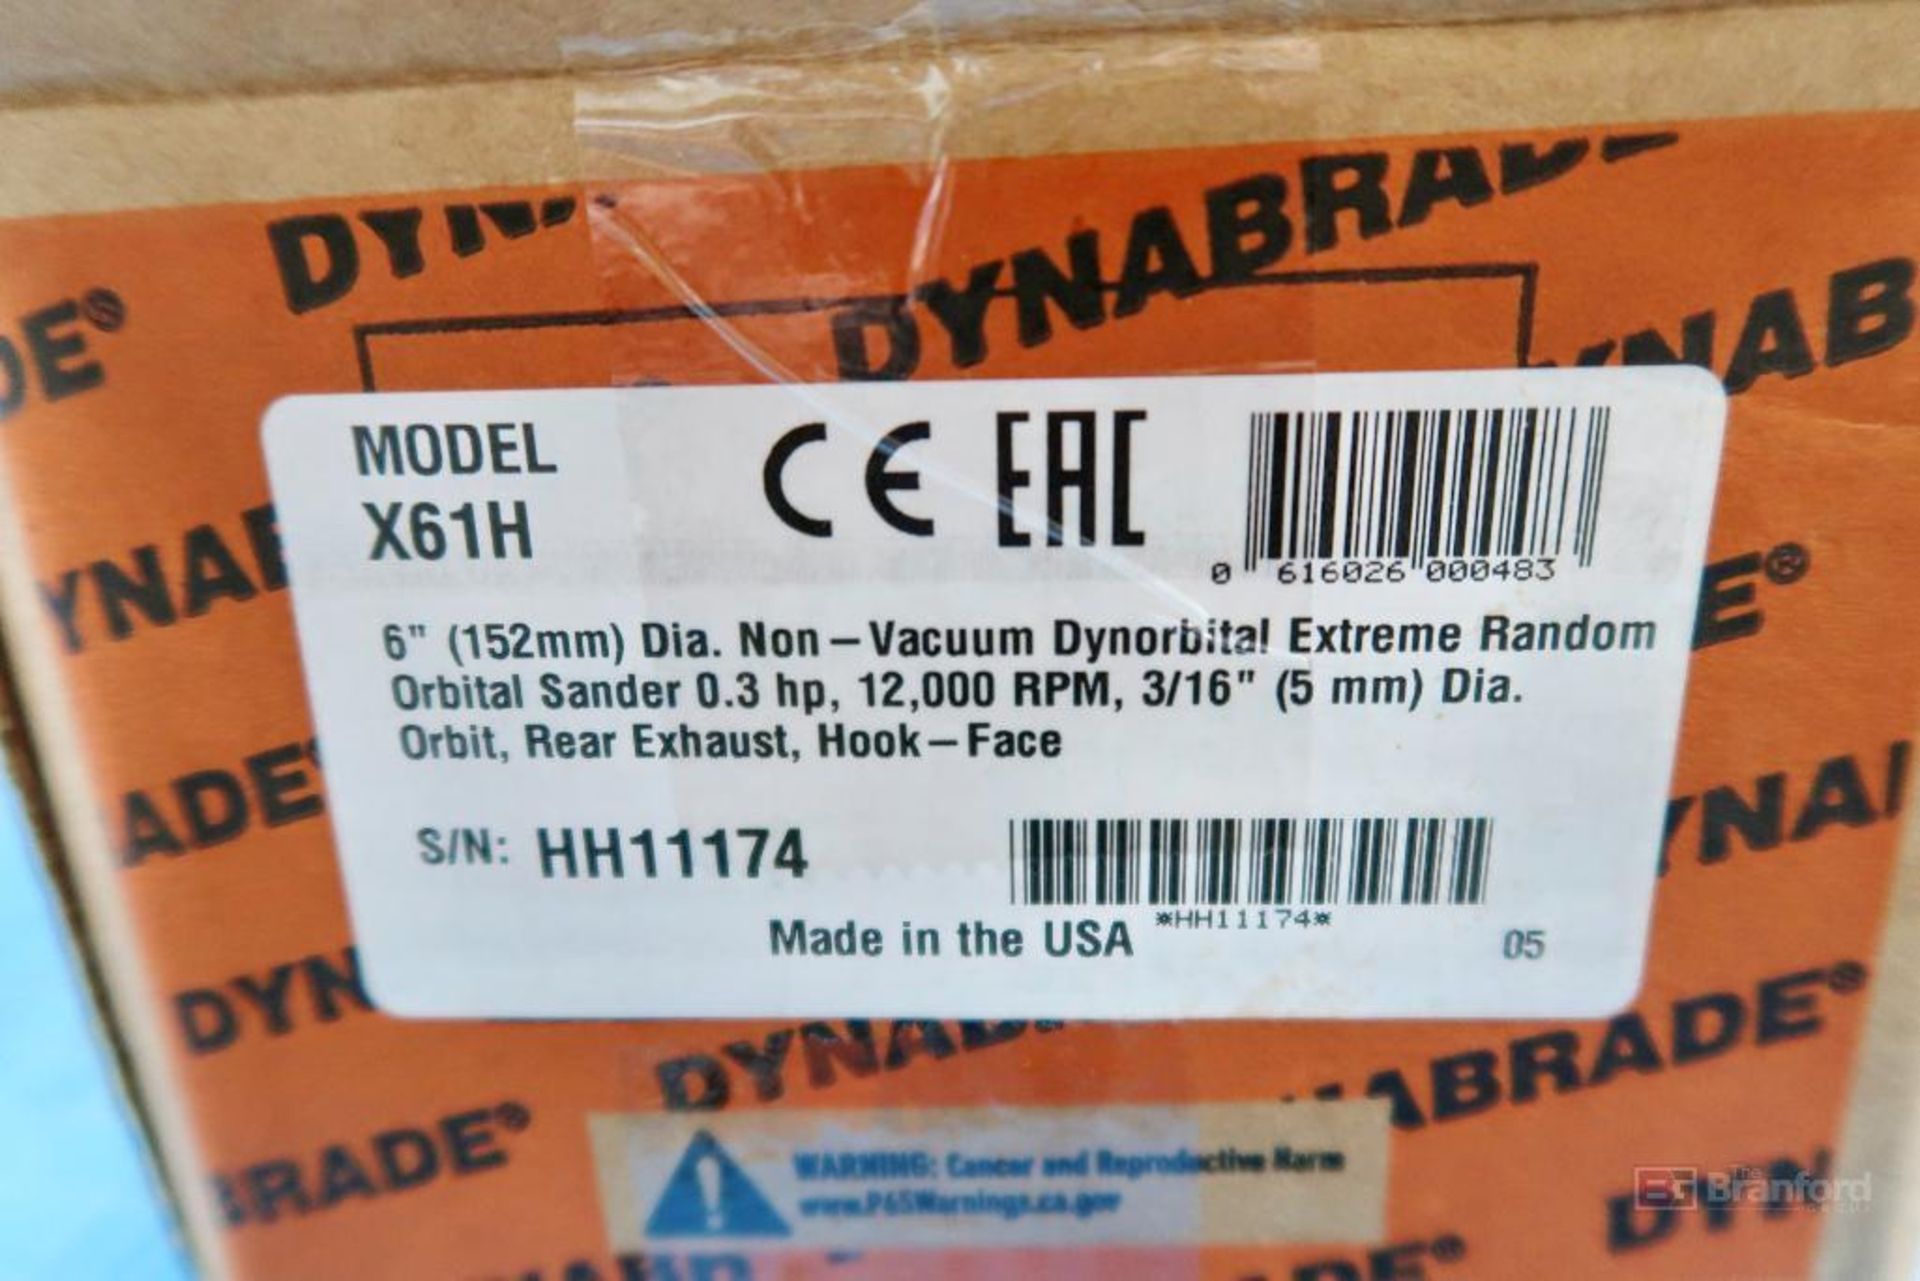 Dynabrade 6" Random Orbital Sander Model X61H - Image 2 of 3